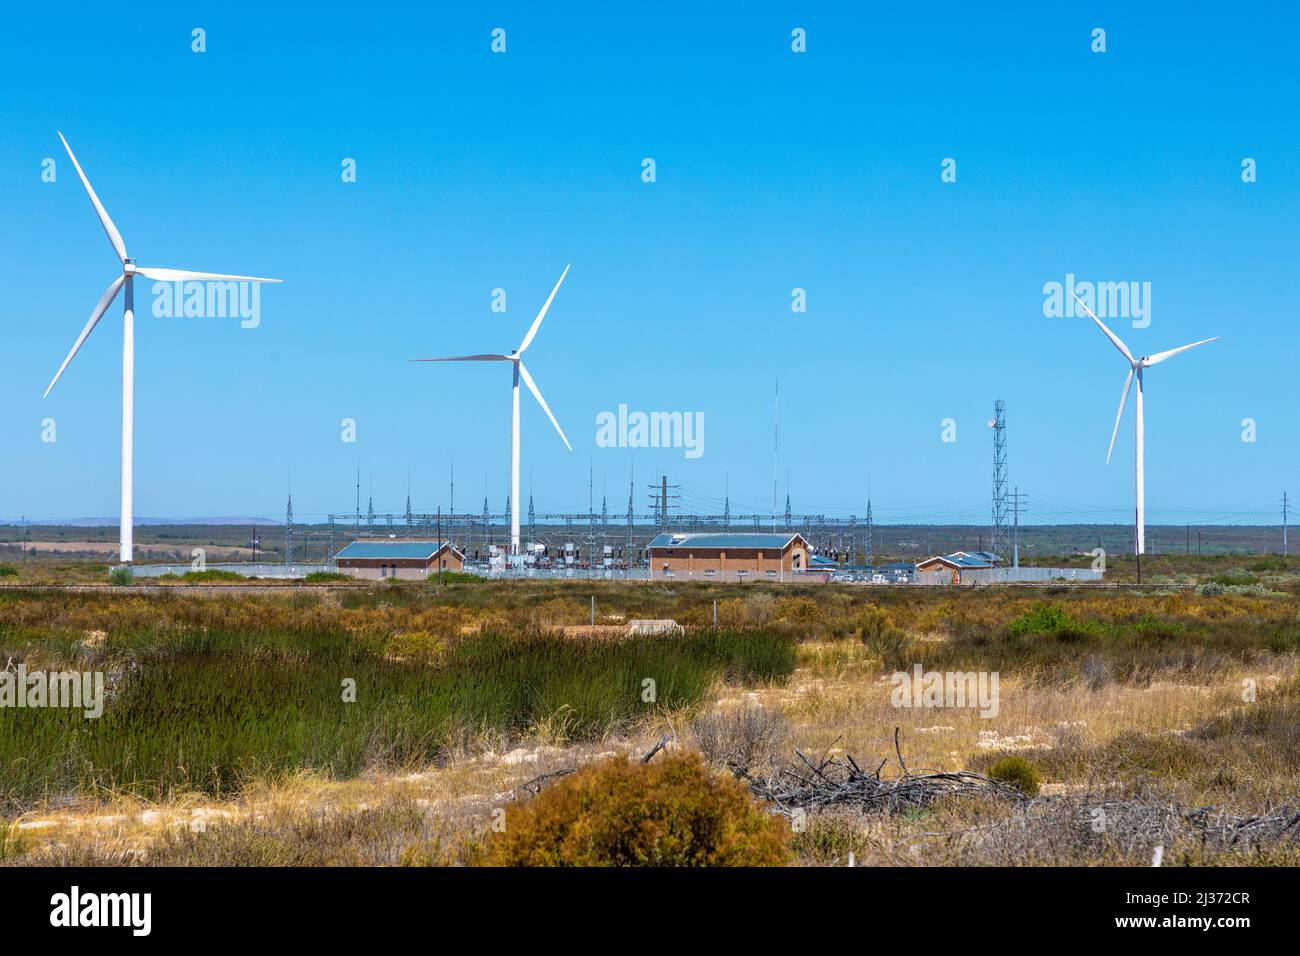 Fattoria di turbine eoliche con edificio di scambio elettrico, in un'area semi-desertica in una calda giornata estiva. Foto Stock